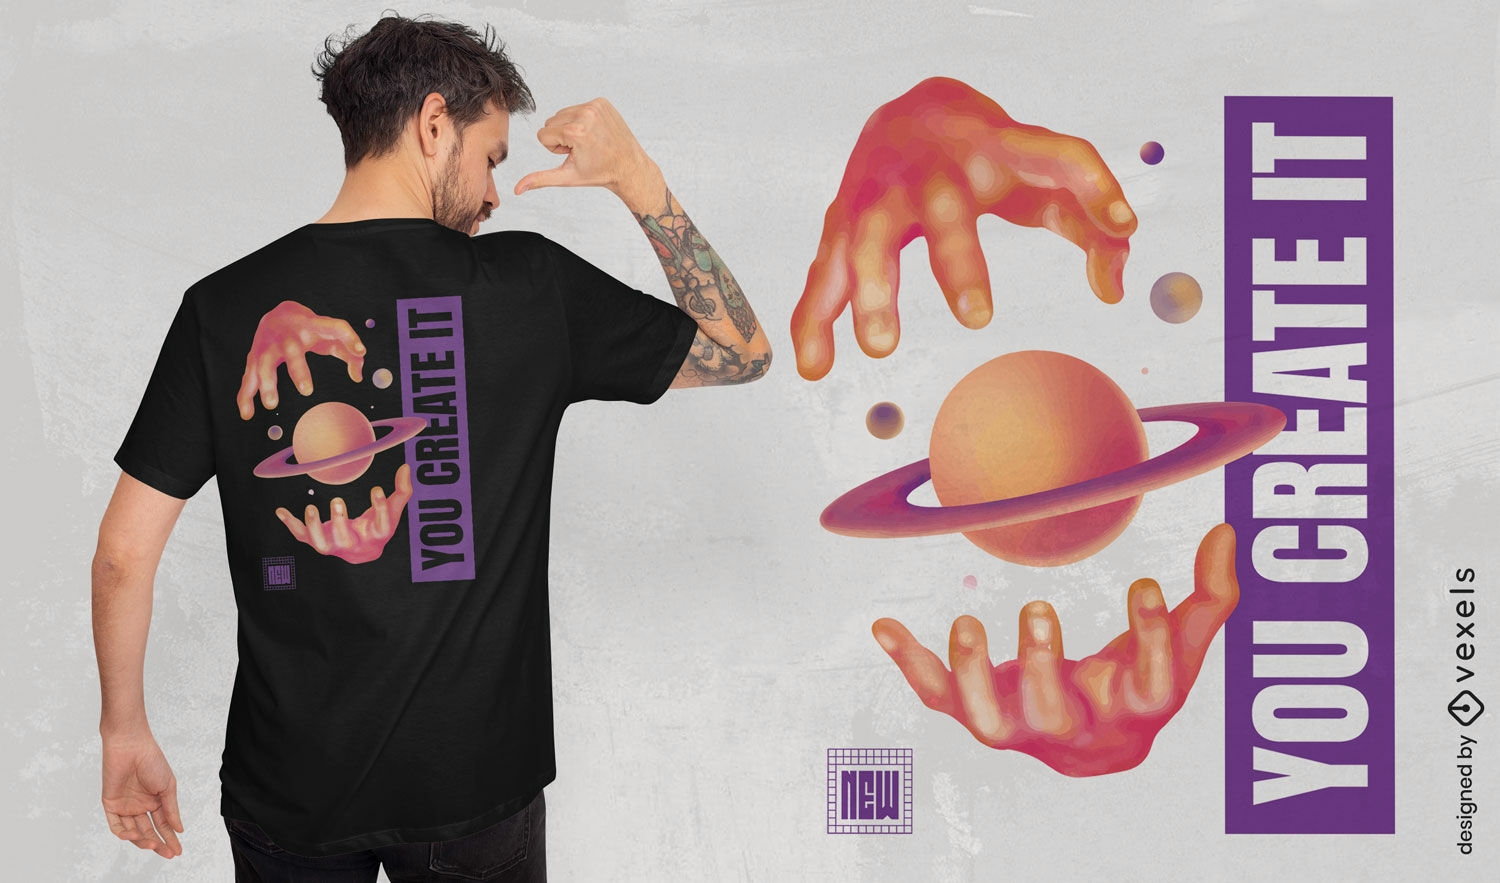 Saturn hands t-shirt design